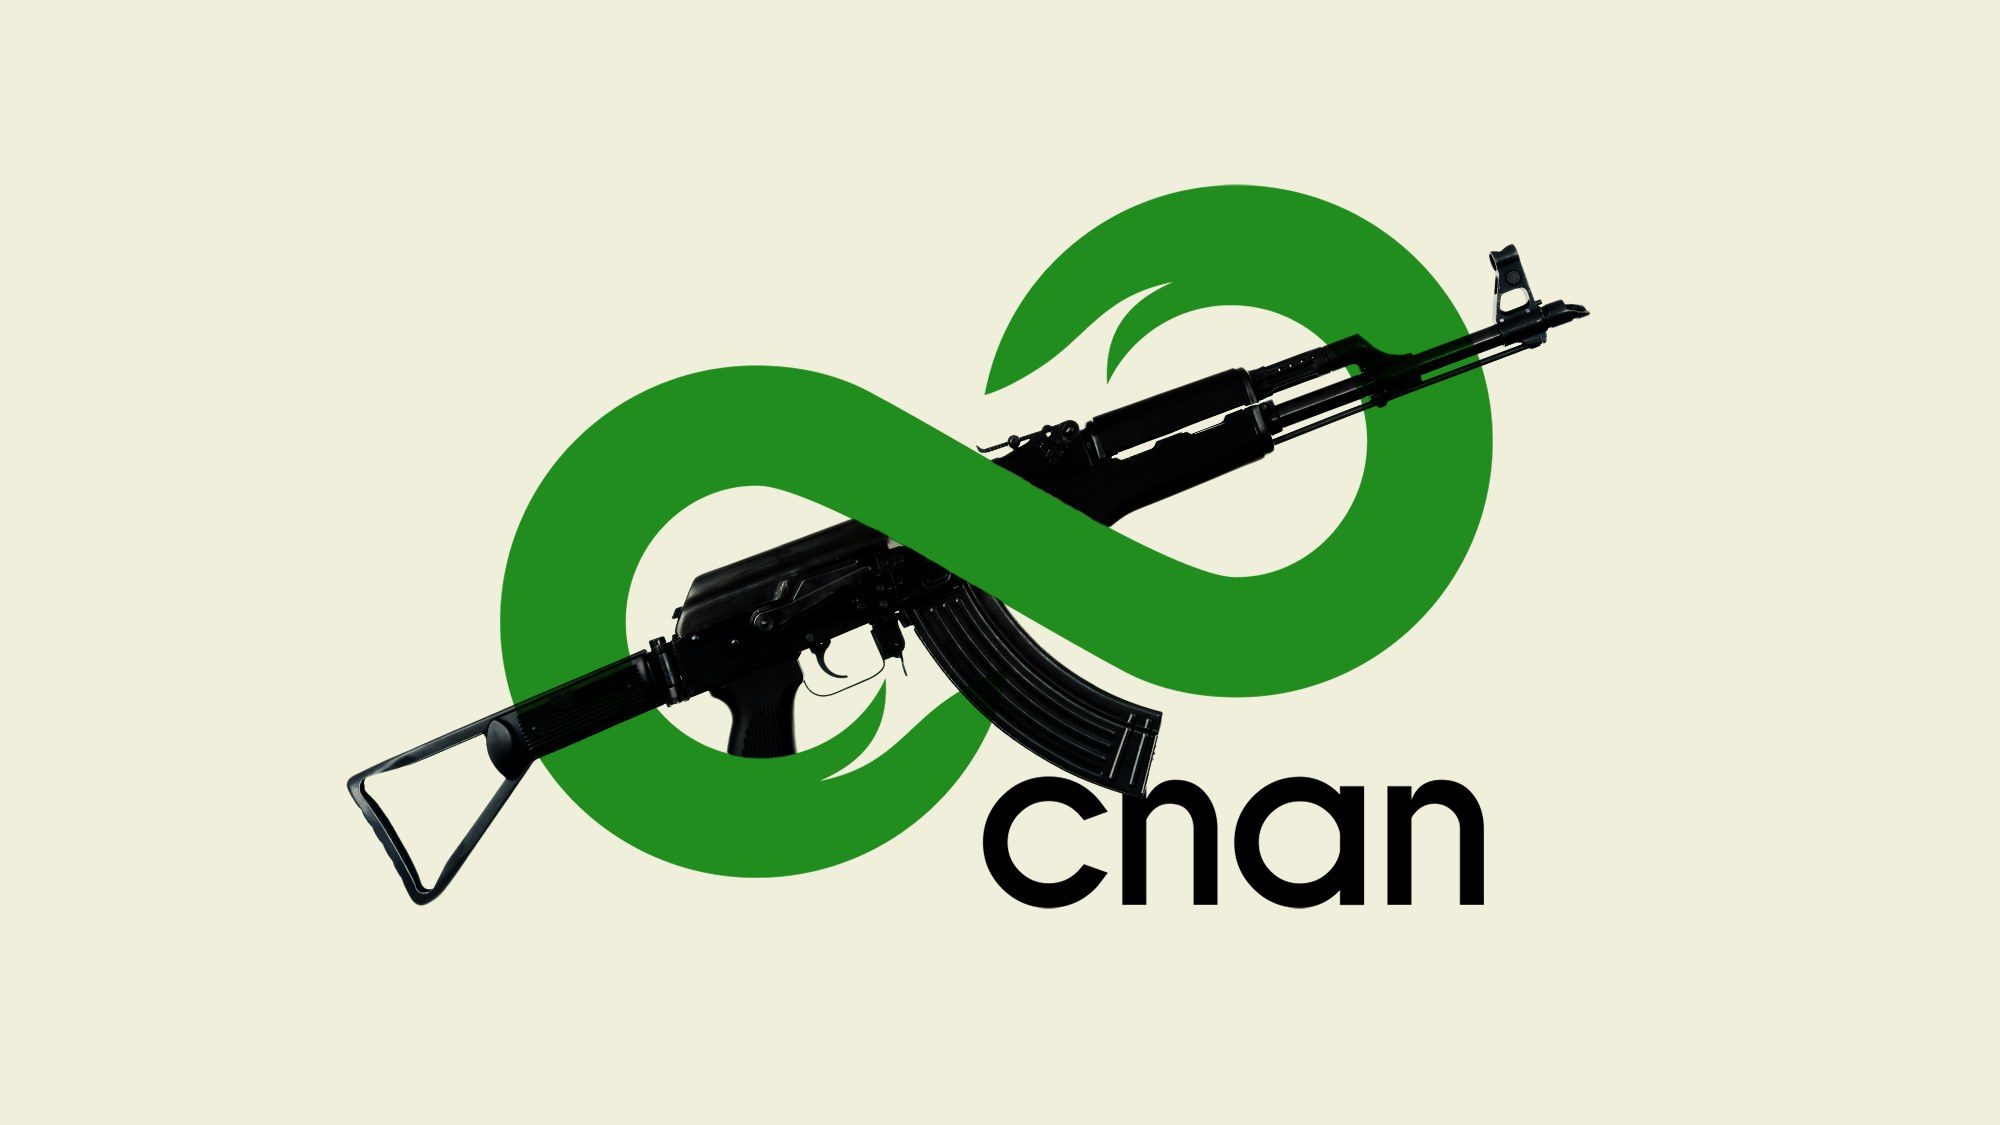 8chan: Un refugio virtual para alimentar odios y glorificar la violencia